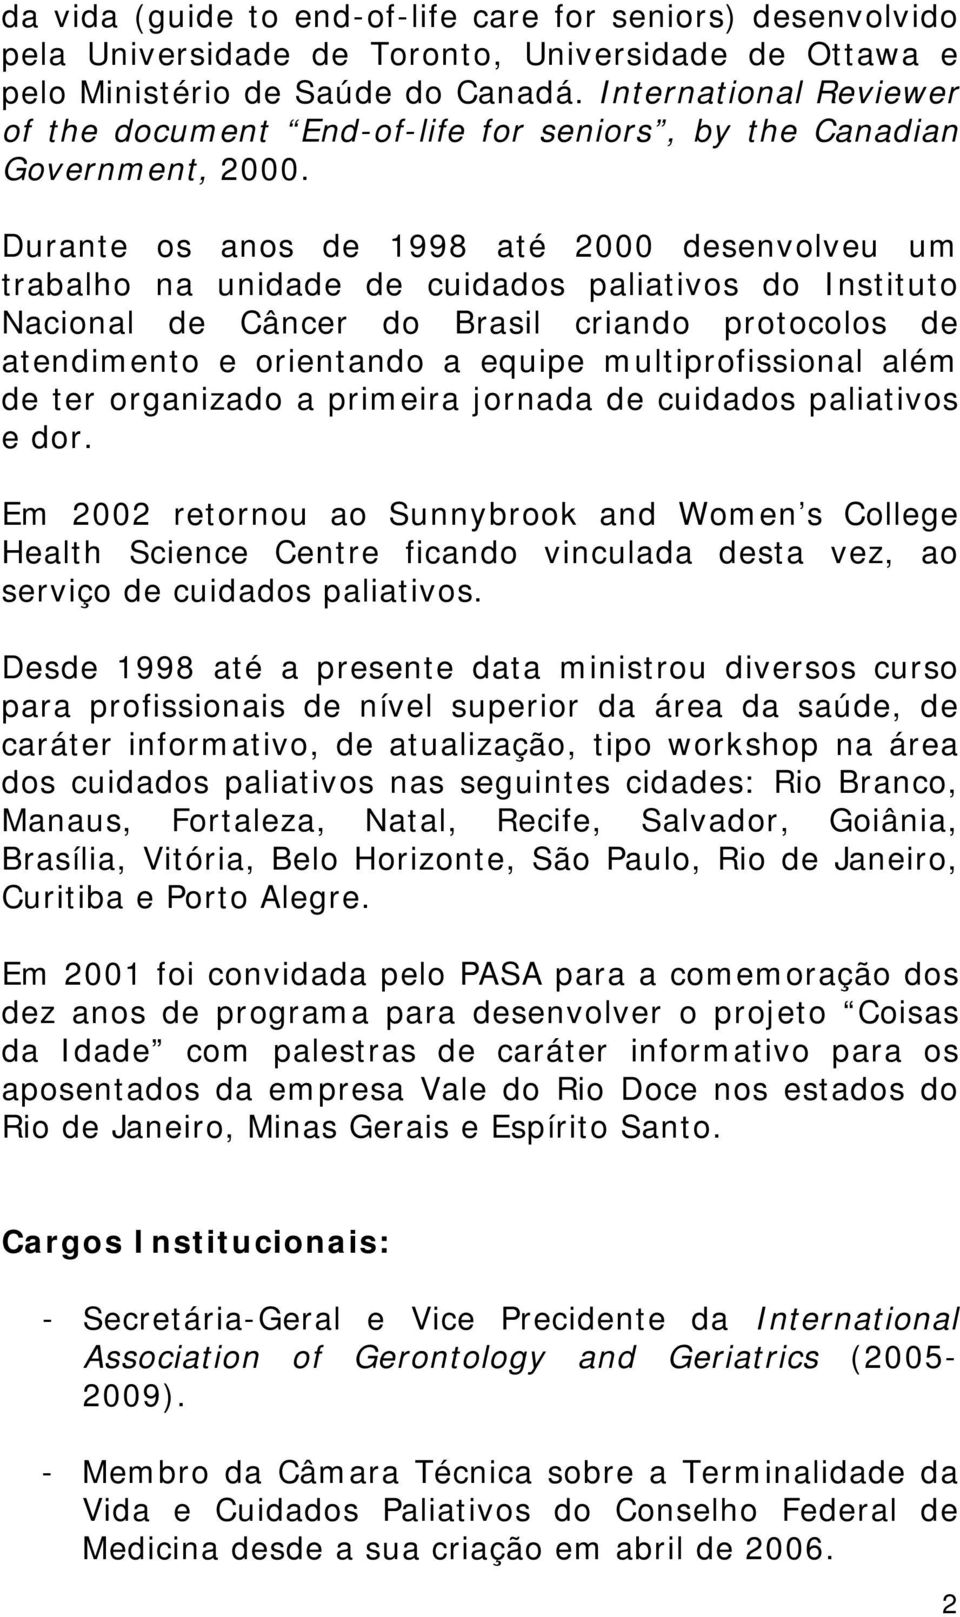 Durante os anos de 1998 até 2000 desenvolveu um trabalho na unidade de cuidados paliativos do Instituto Nacional de Câncer do Brasil criando protocolos de atendimento e orientando a equipe